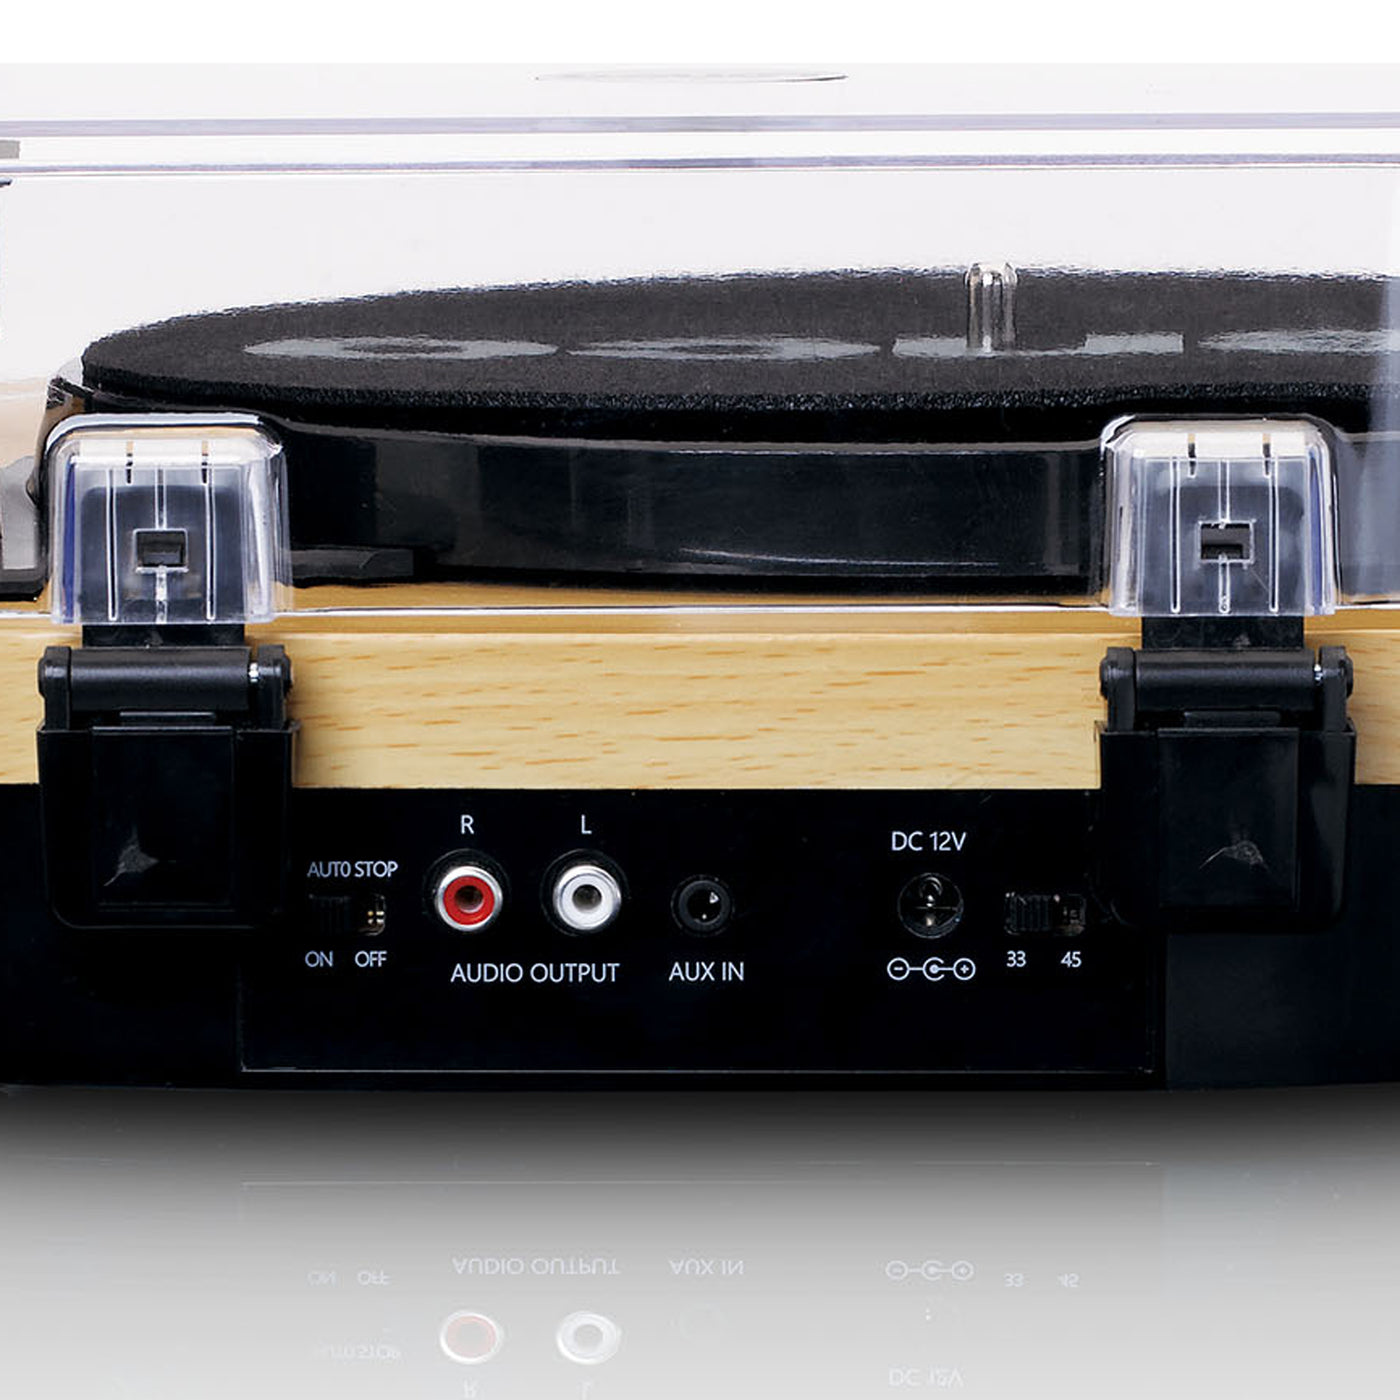 LENCO LS-40WD - Gramofon z wbudowanymi głośnikami - Drewno